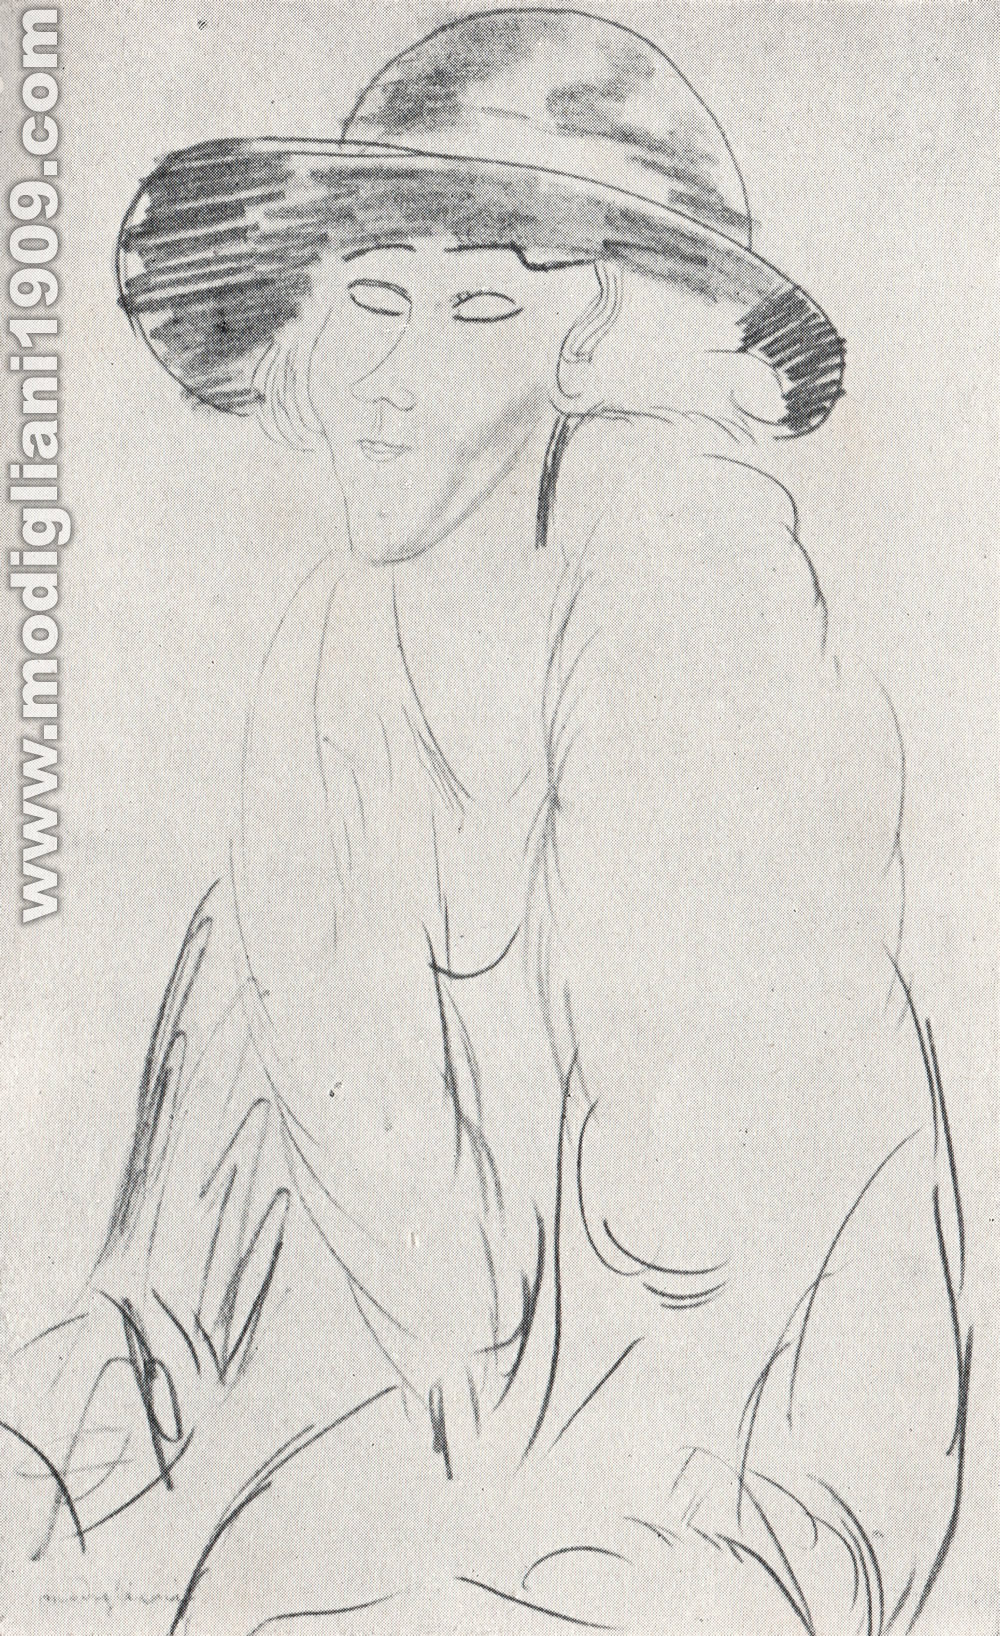 Amedeo Modigliani - Ritratto di signora - 1918 - Parigi. Collezione Dr. Sabouraud